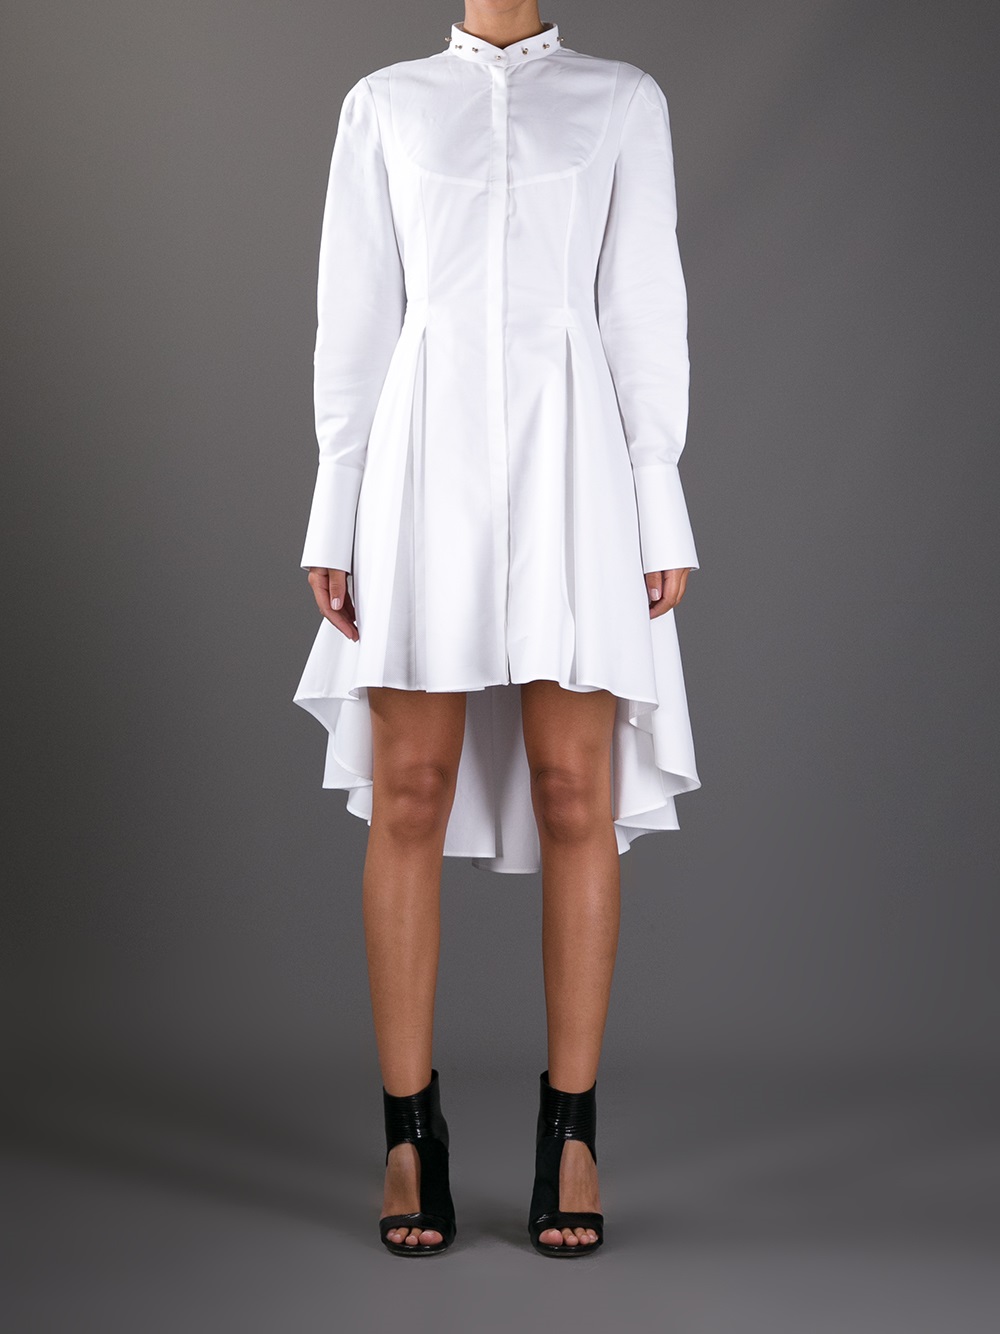 Alexander mcqueen Studded Collar Shirt Dress in White | Lyst